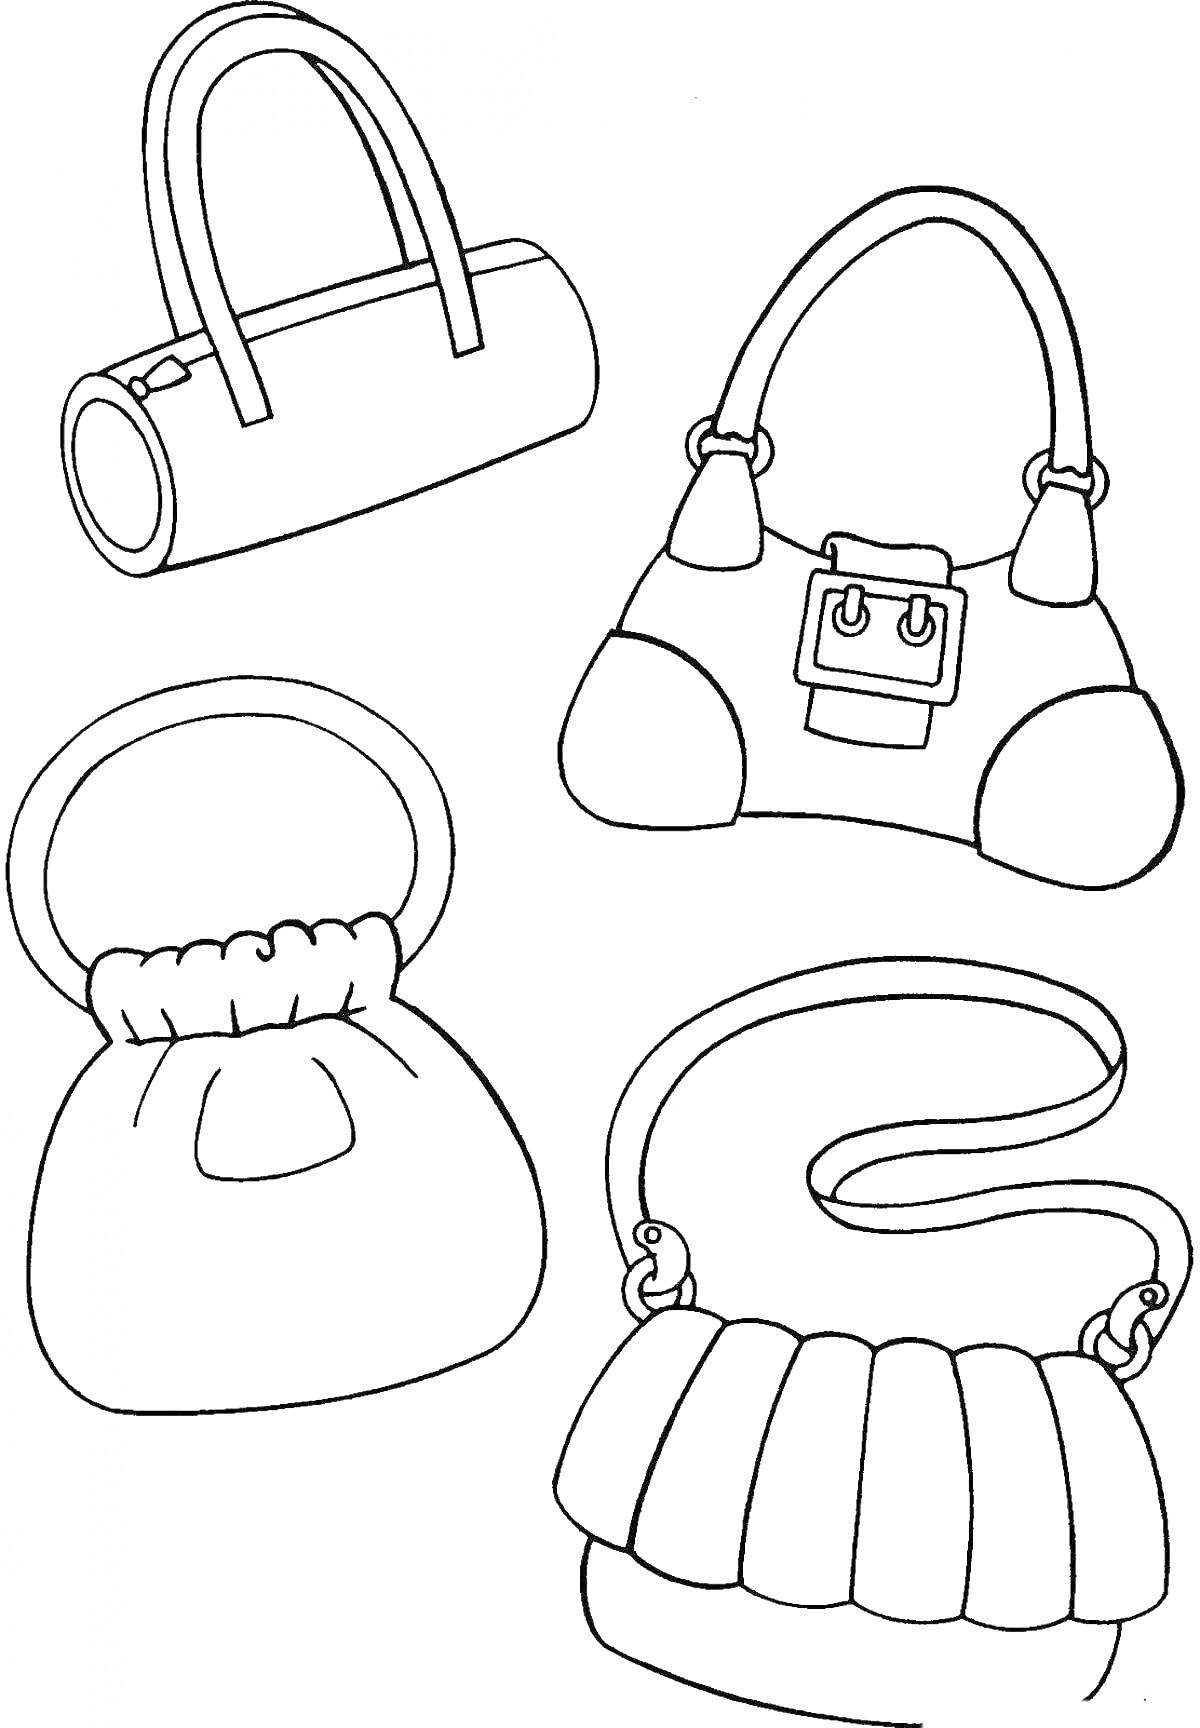 Раскраска Четыре сумочки разных форм: цилиндрическая с двумя ручками, с пряжкой и двумя ручками, с одним круглым замком, с длинным ремнем